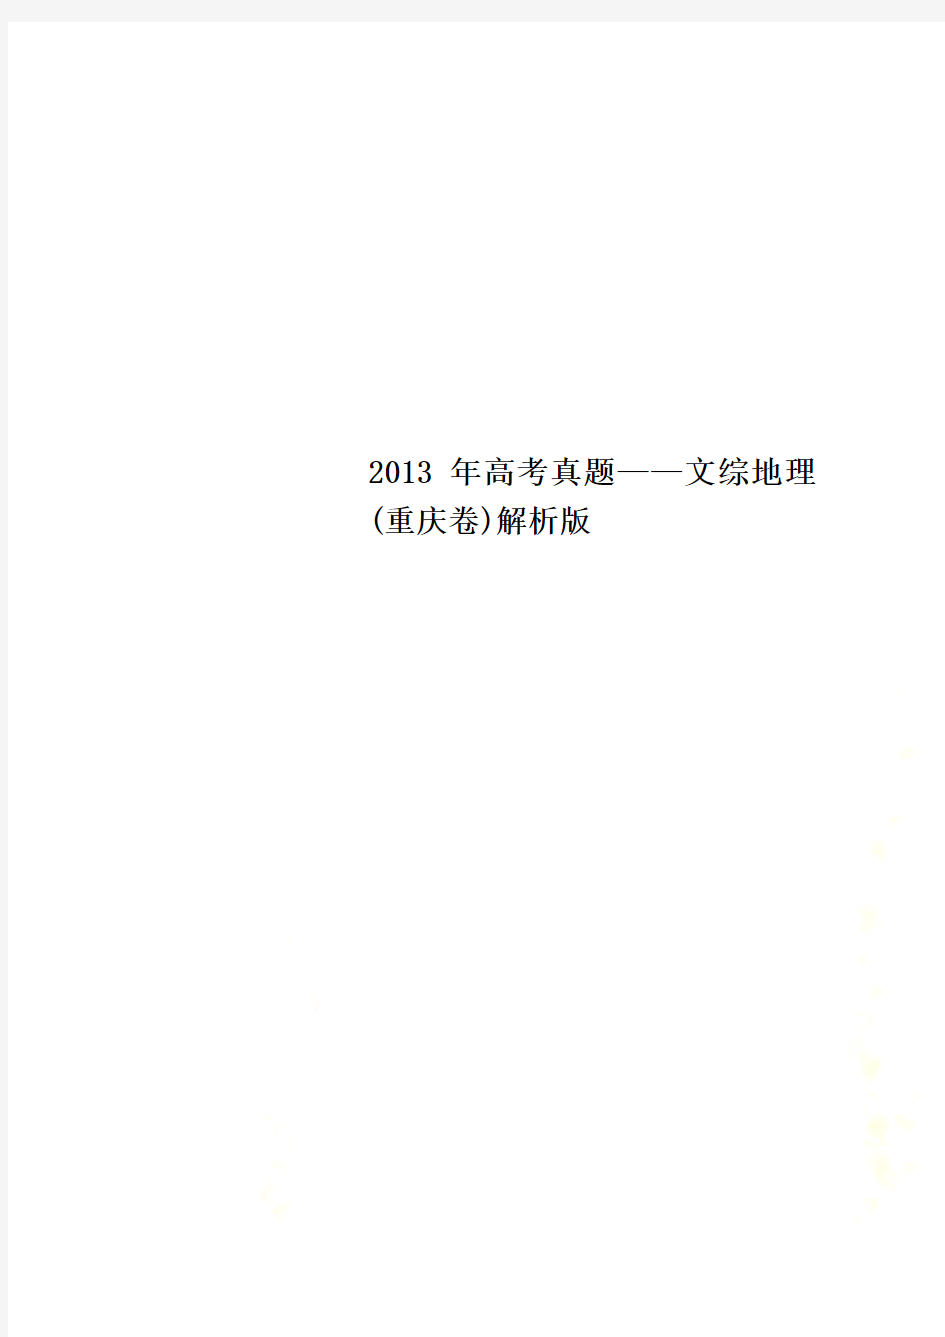 2013年高考真题——文综地理(重庆卷)解析版